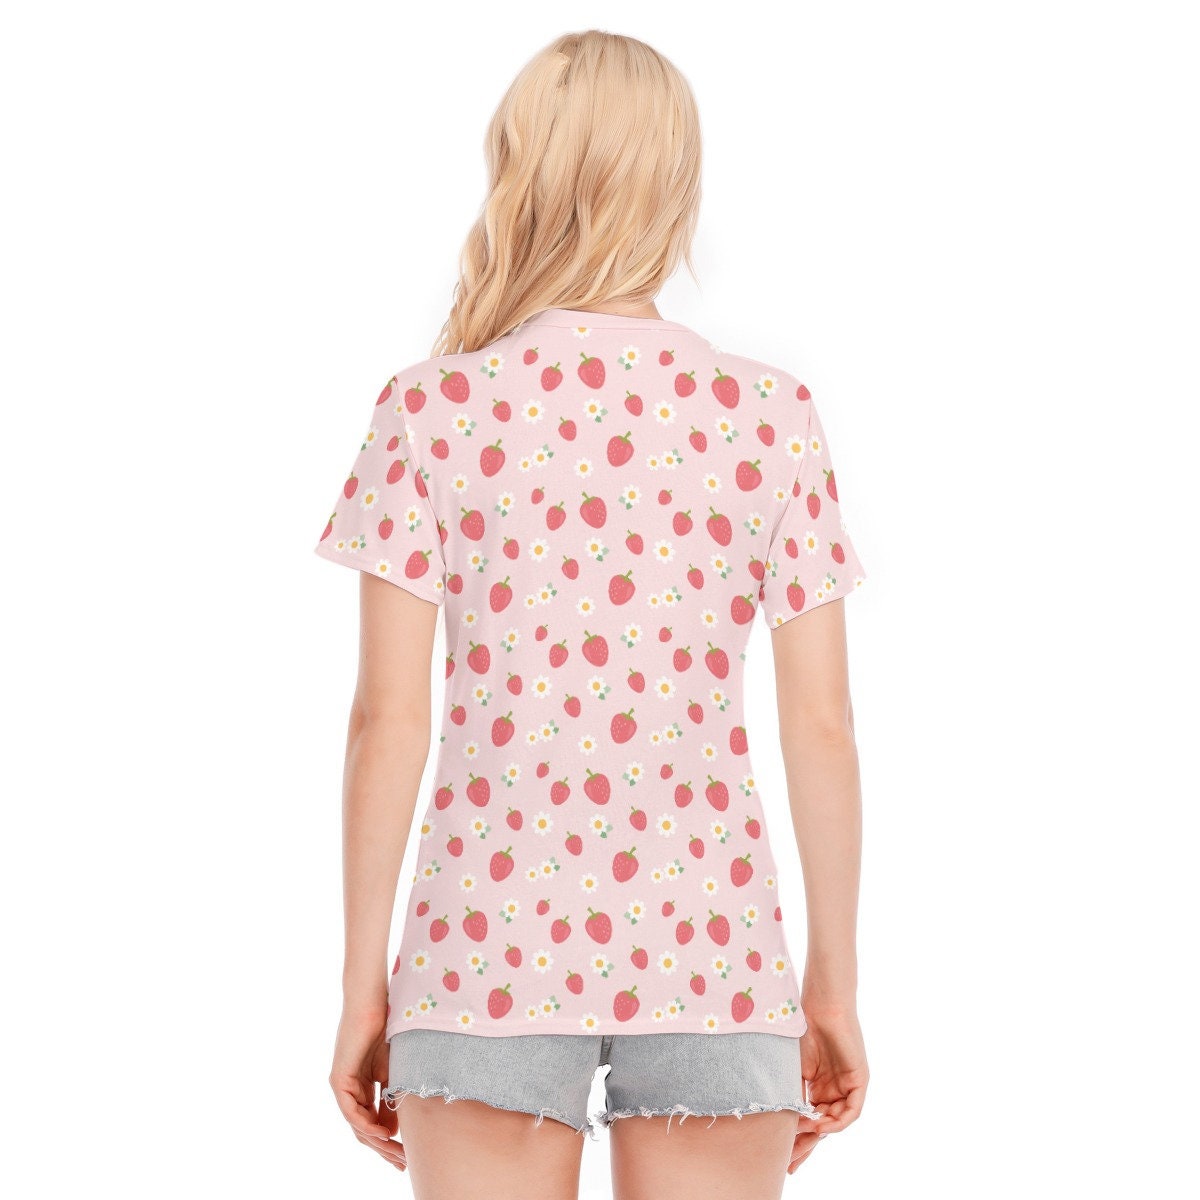 Erdbeer-T-Shirt, rosa Erdbeer-Top, Erdbeer-Print-Top, Damen-Tops, Sommer-Top für Damen, einzigartiges T-Shirt, Erdbeer-Muster-Top, rosa Top